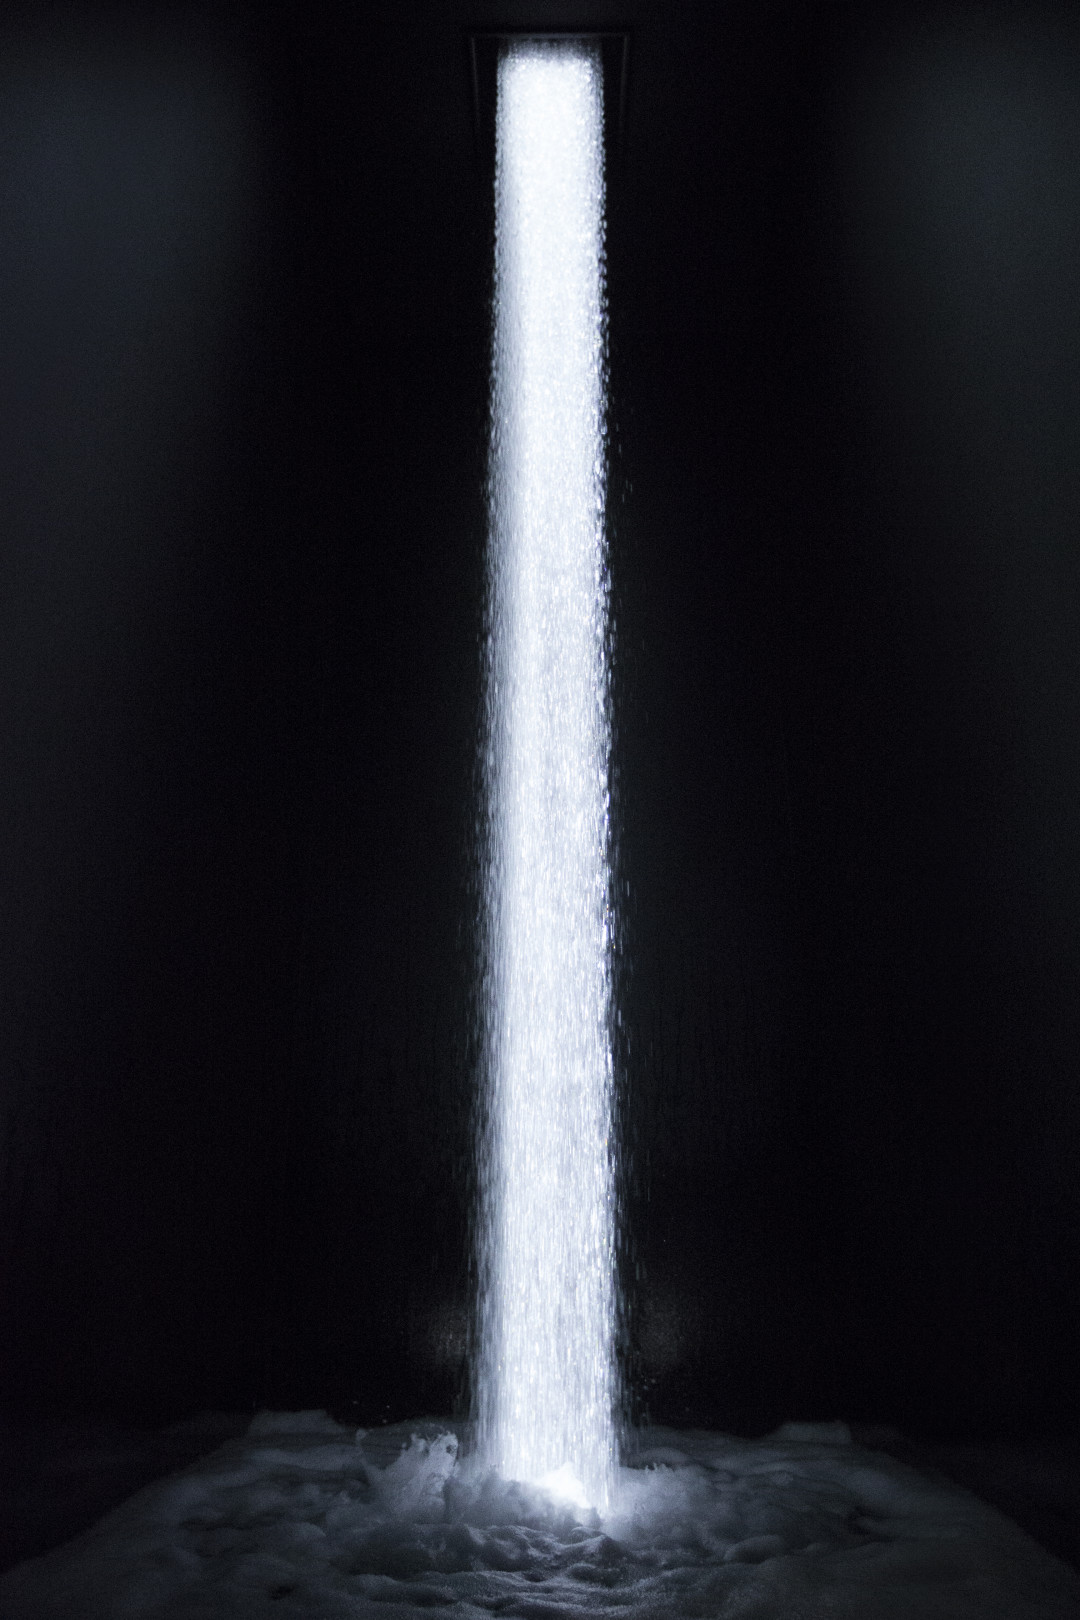 「坂の上にある光の滝 Waterfall of Light Particles at the Top of an Incline」teamLab, 2018, Digital Installation